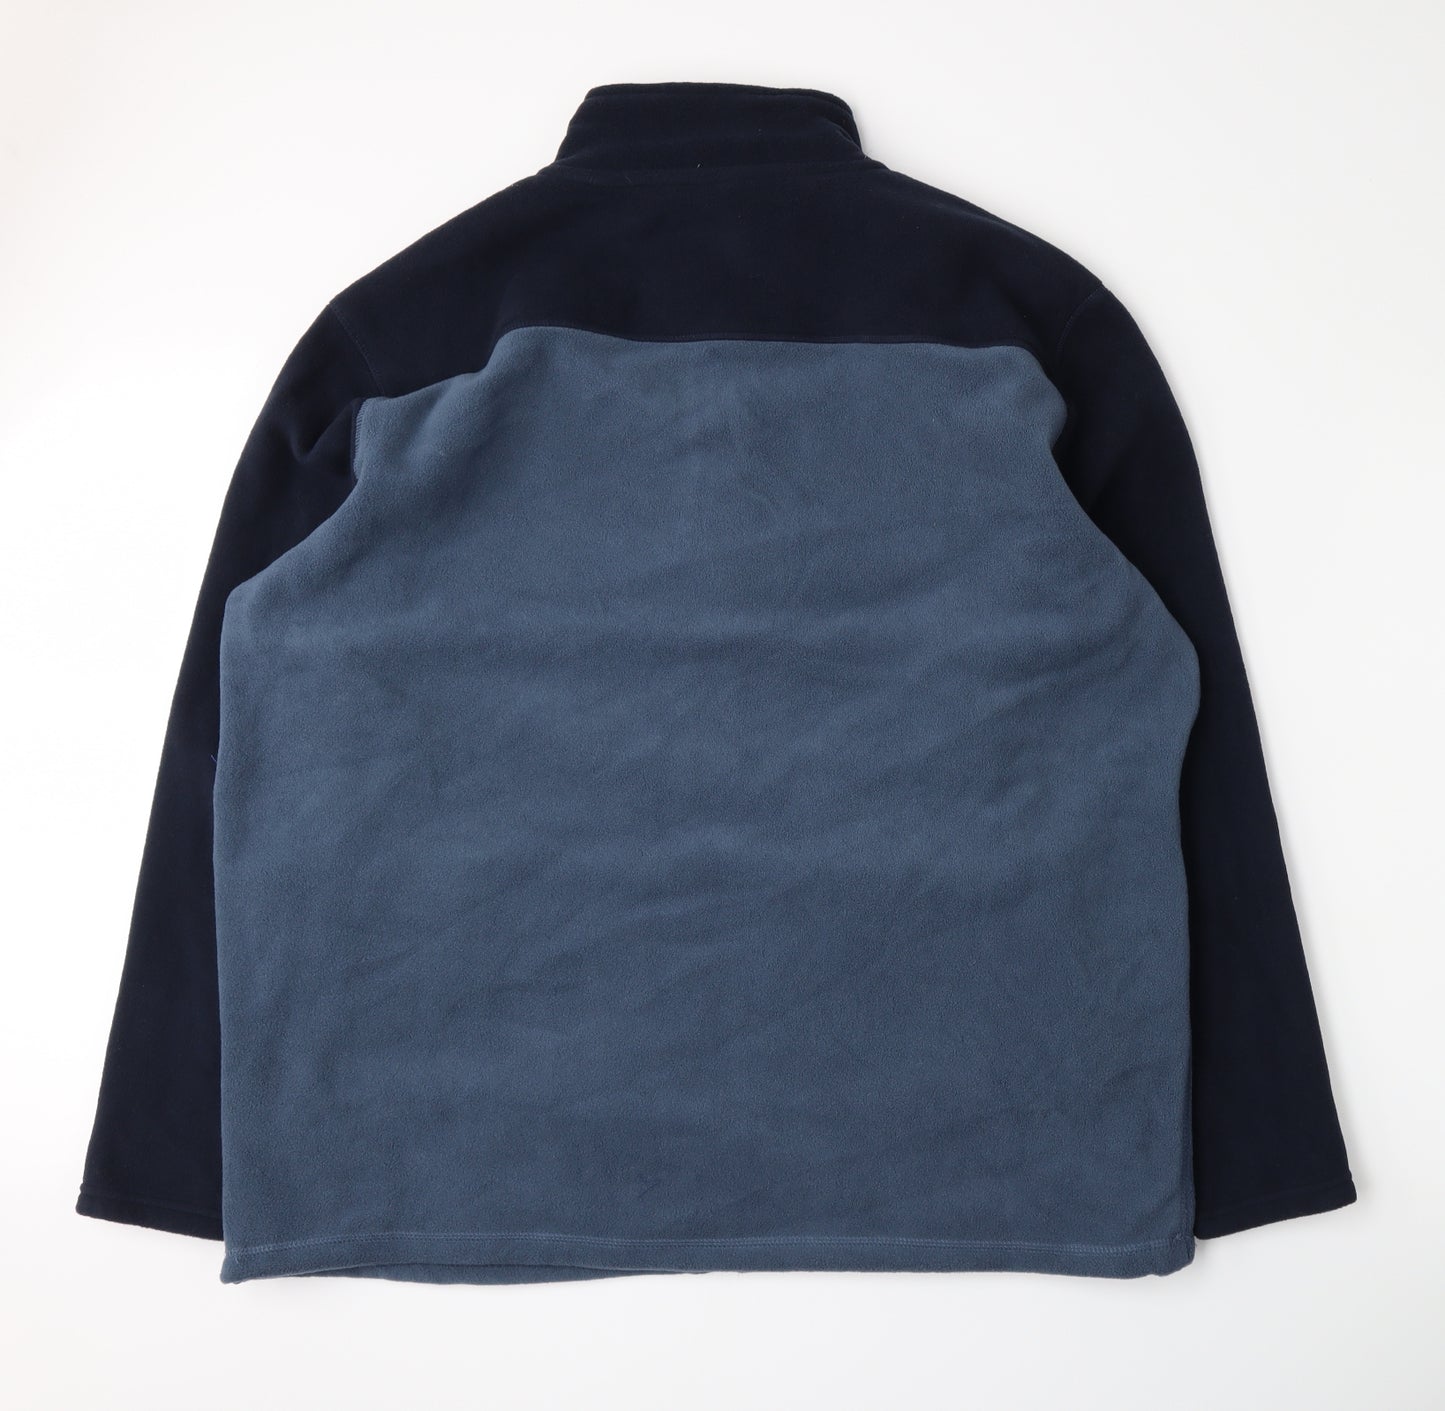 EWM Mens Blue  Fleece Jacket  Size 2XL